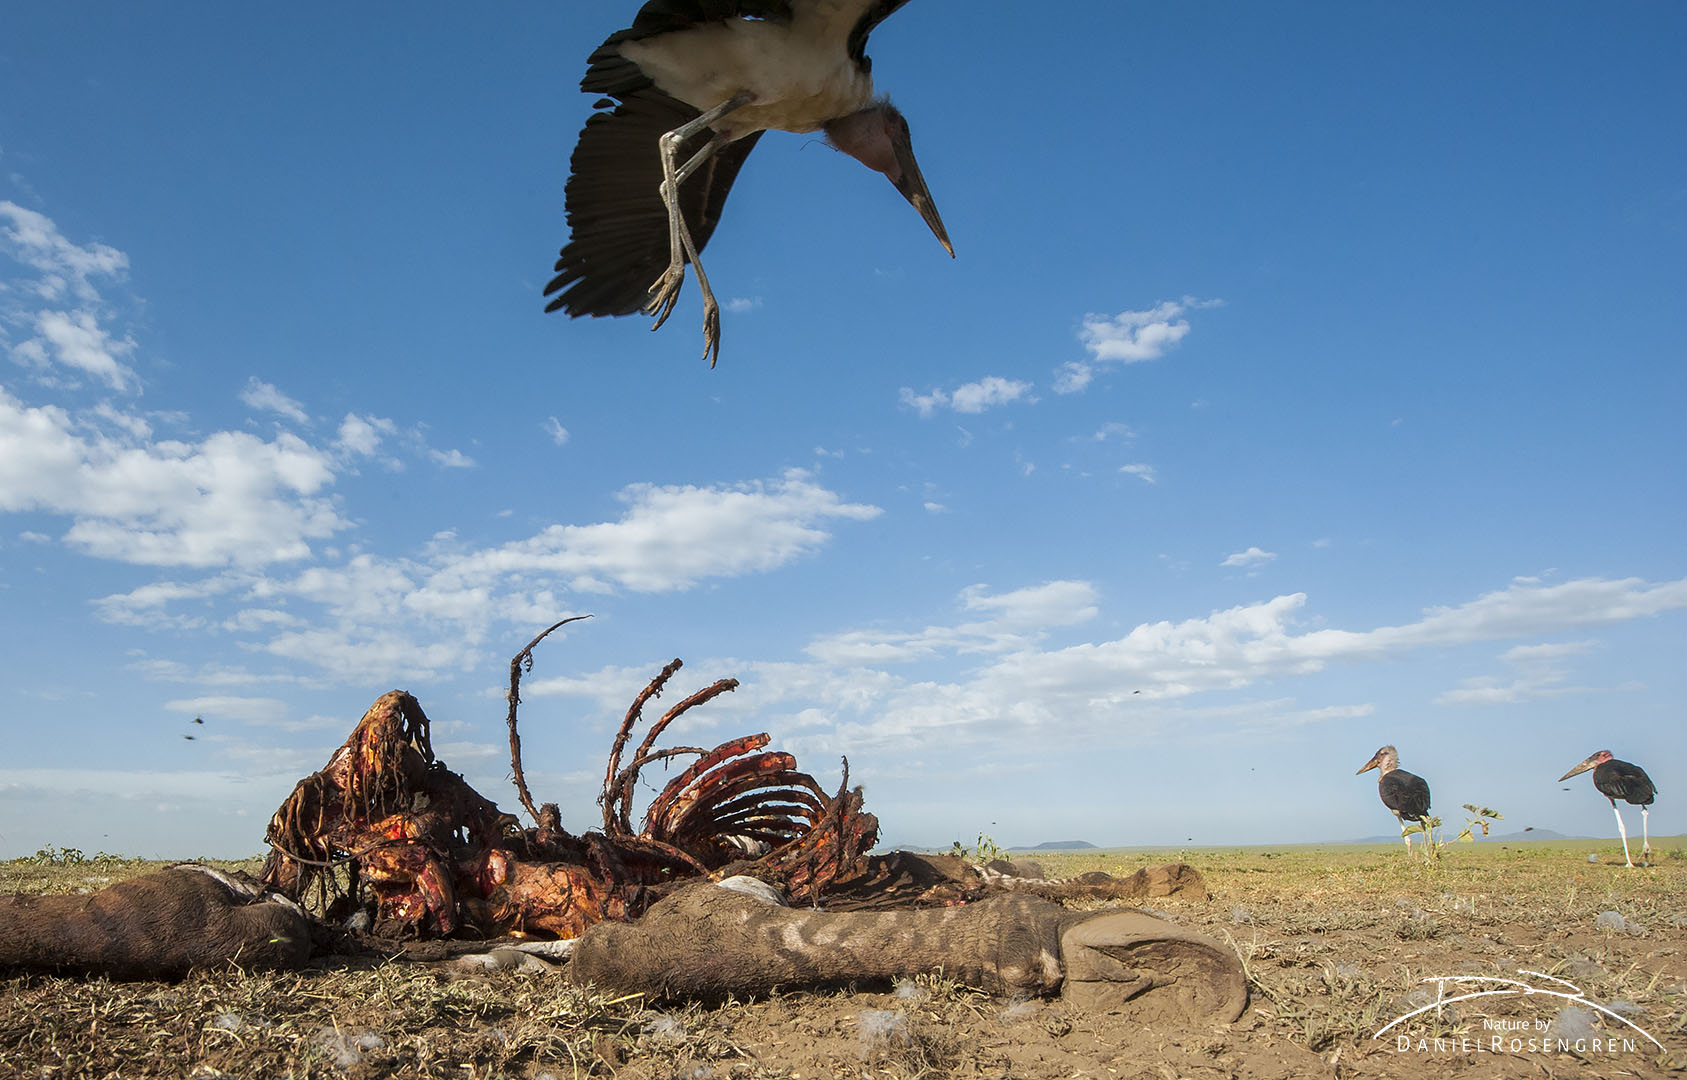 A Marabou stork coming in for a landing at a zebra carcass. © Daniel Rosengren